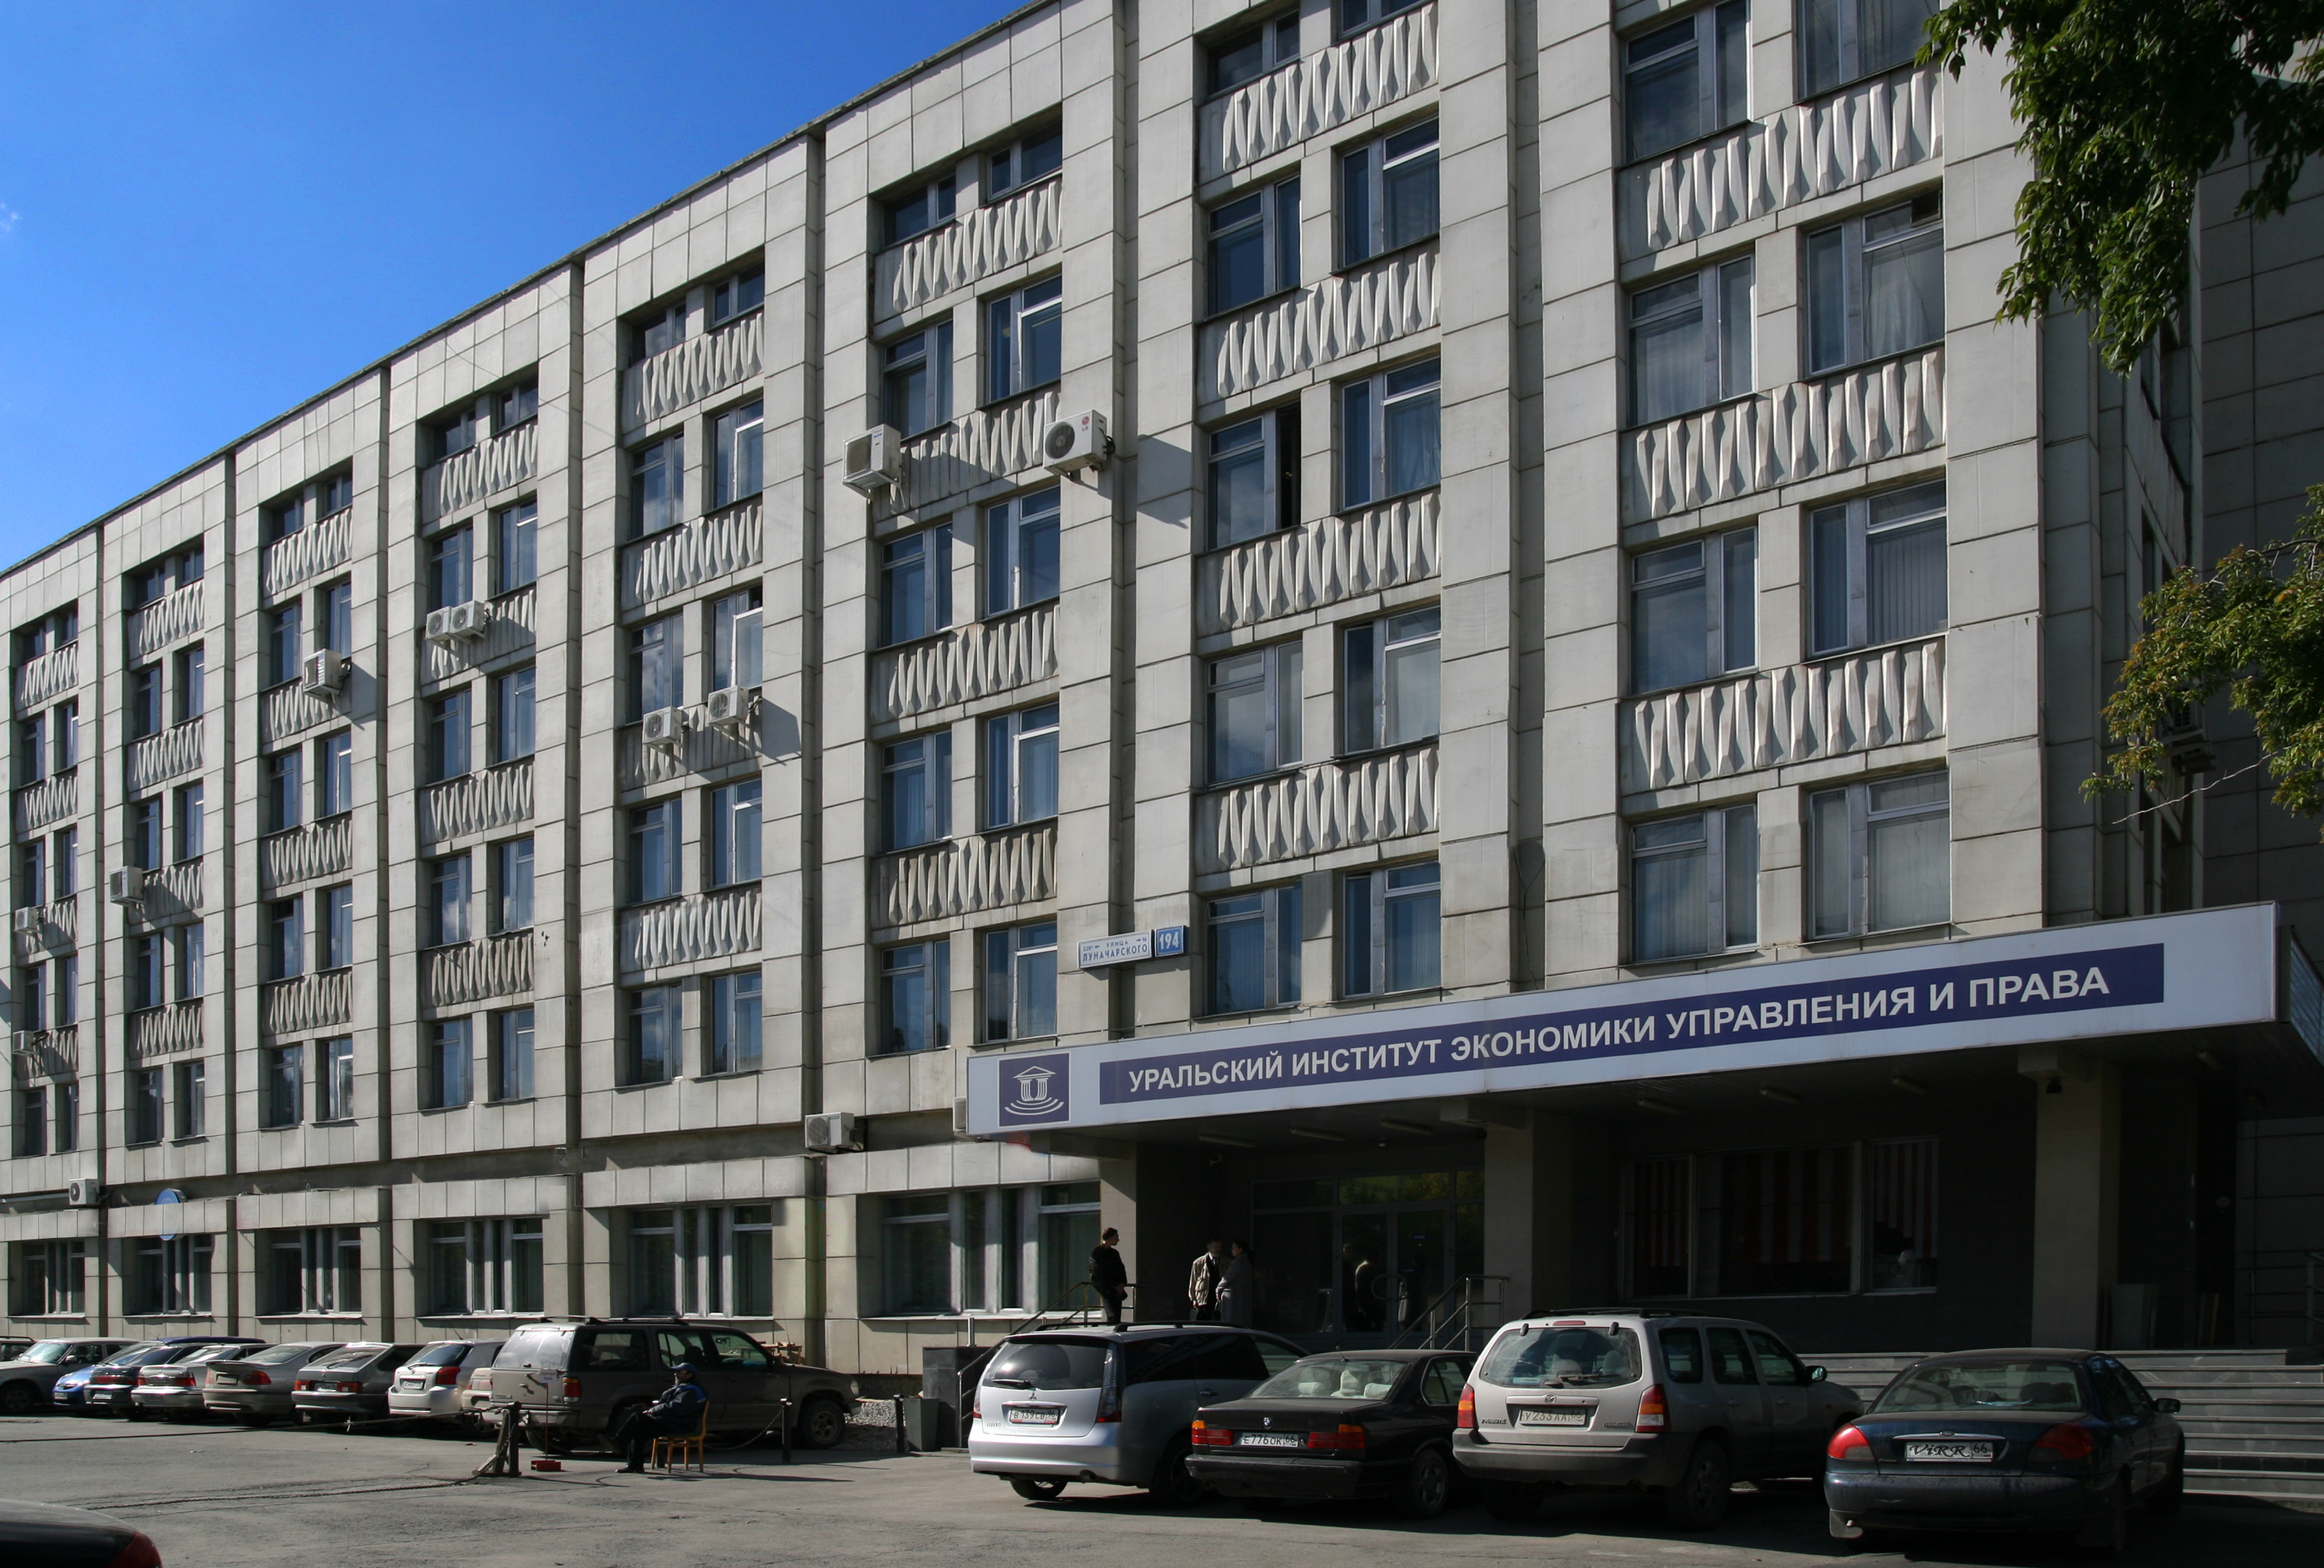 Открытый университет екатеринбург